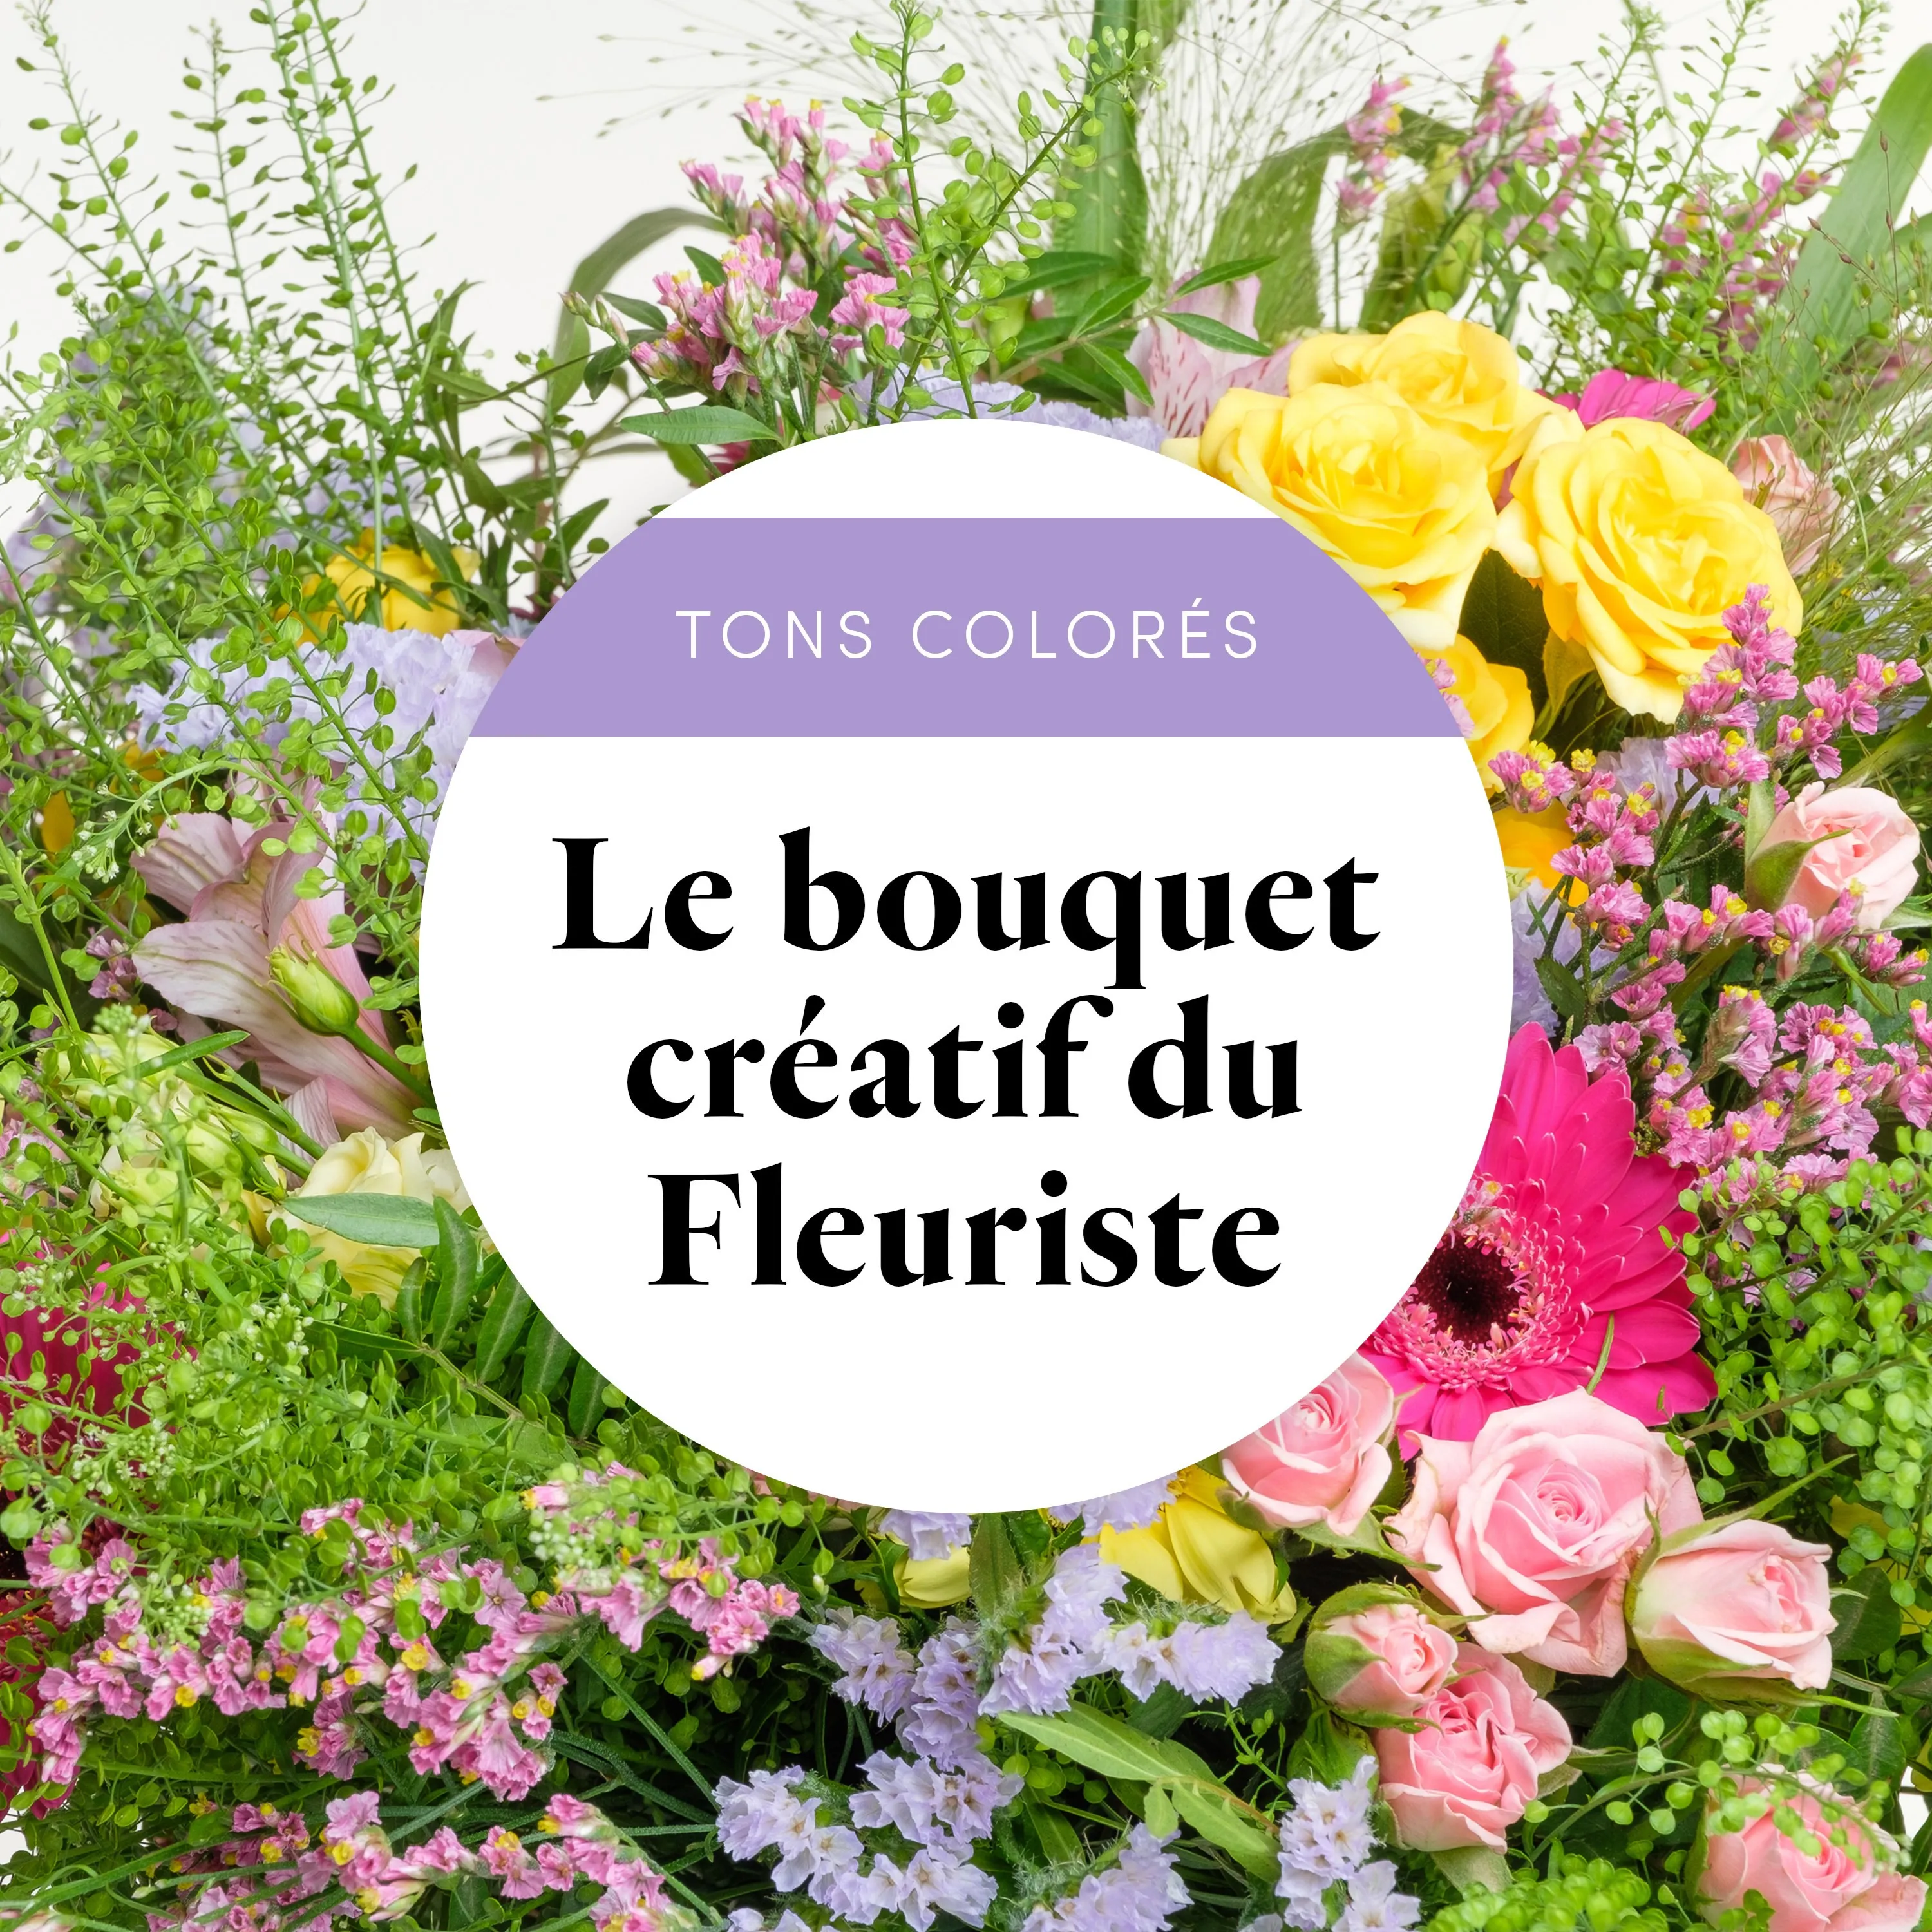 Bouquet du fleuriste Multicolore et ses amandes au chocolat - France